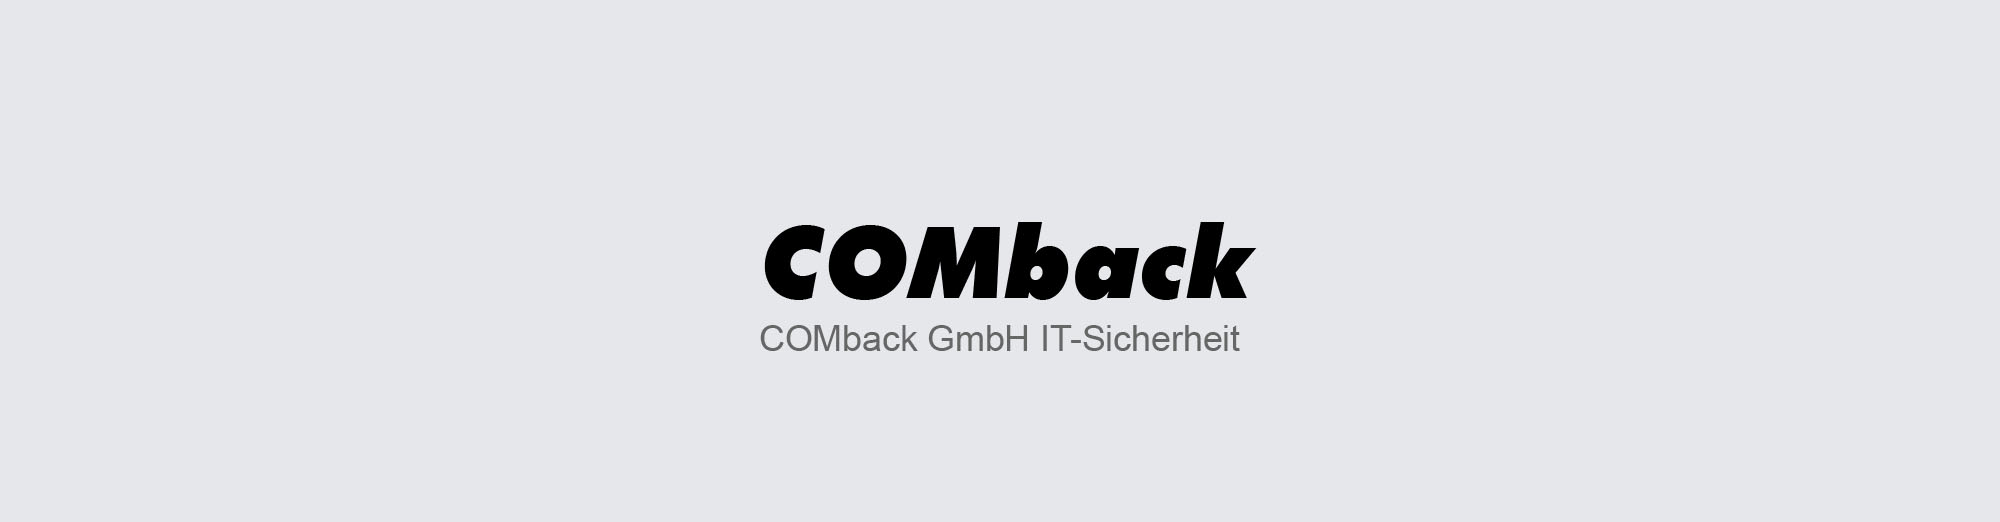 COMback - IT-Sicherheit